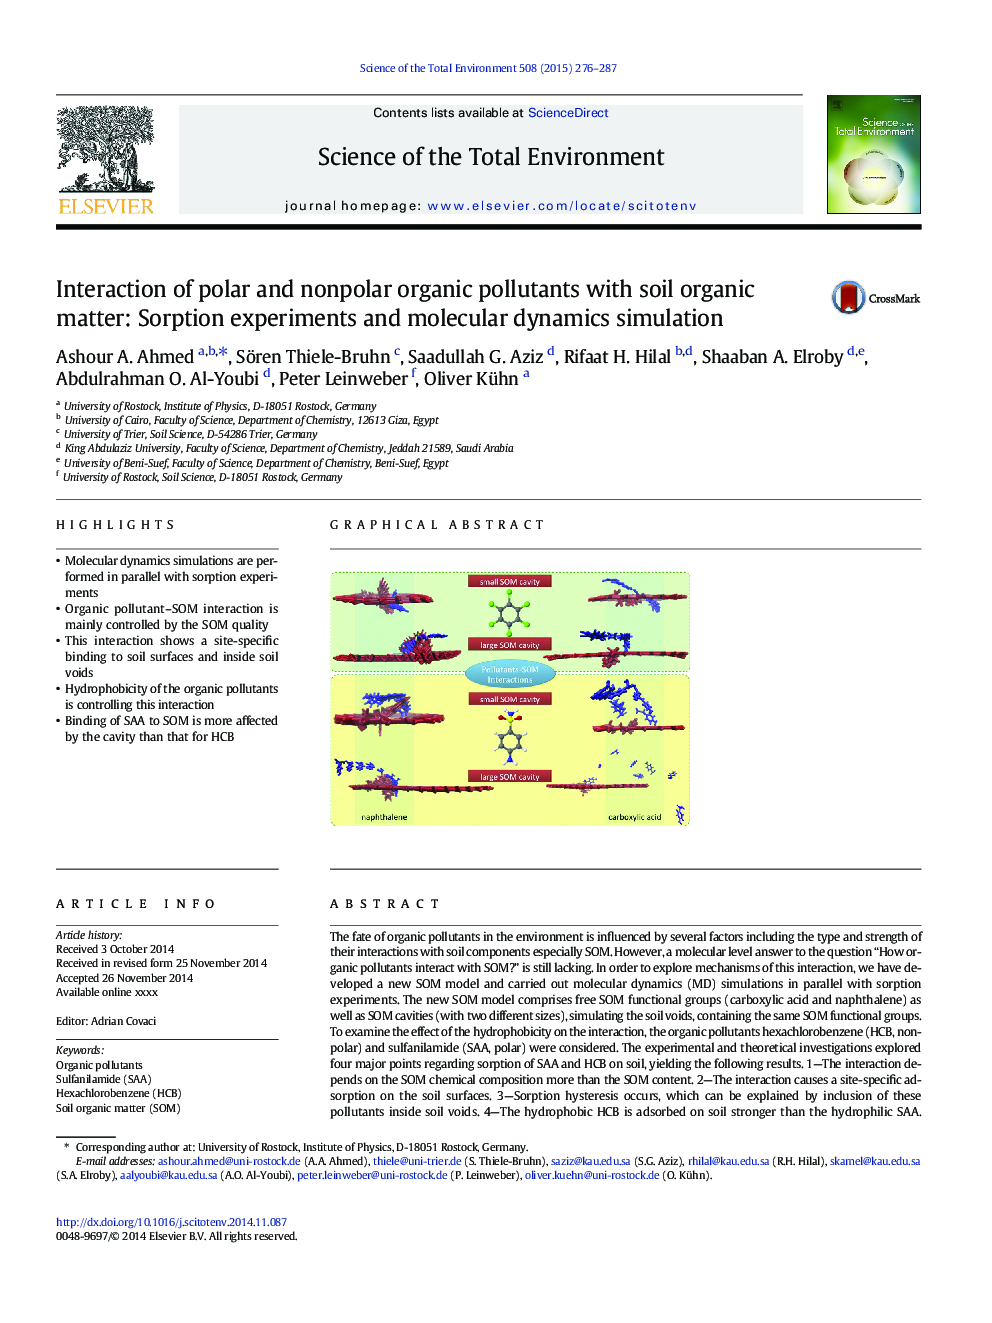 تعامل آلاینده های آلی قطبی و غیر قطبی با مواد آلی خاک: آزمایش های جذب و شبیه سازی دینامیک مولکولی 